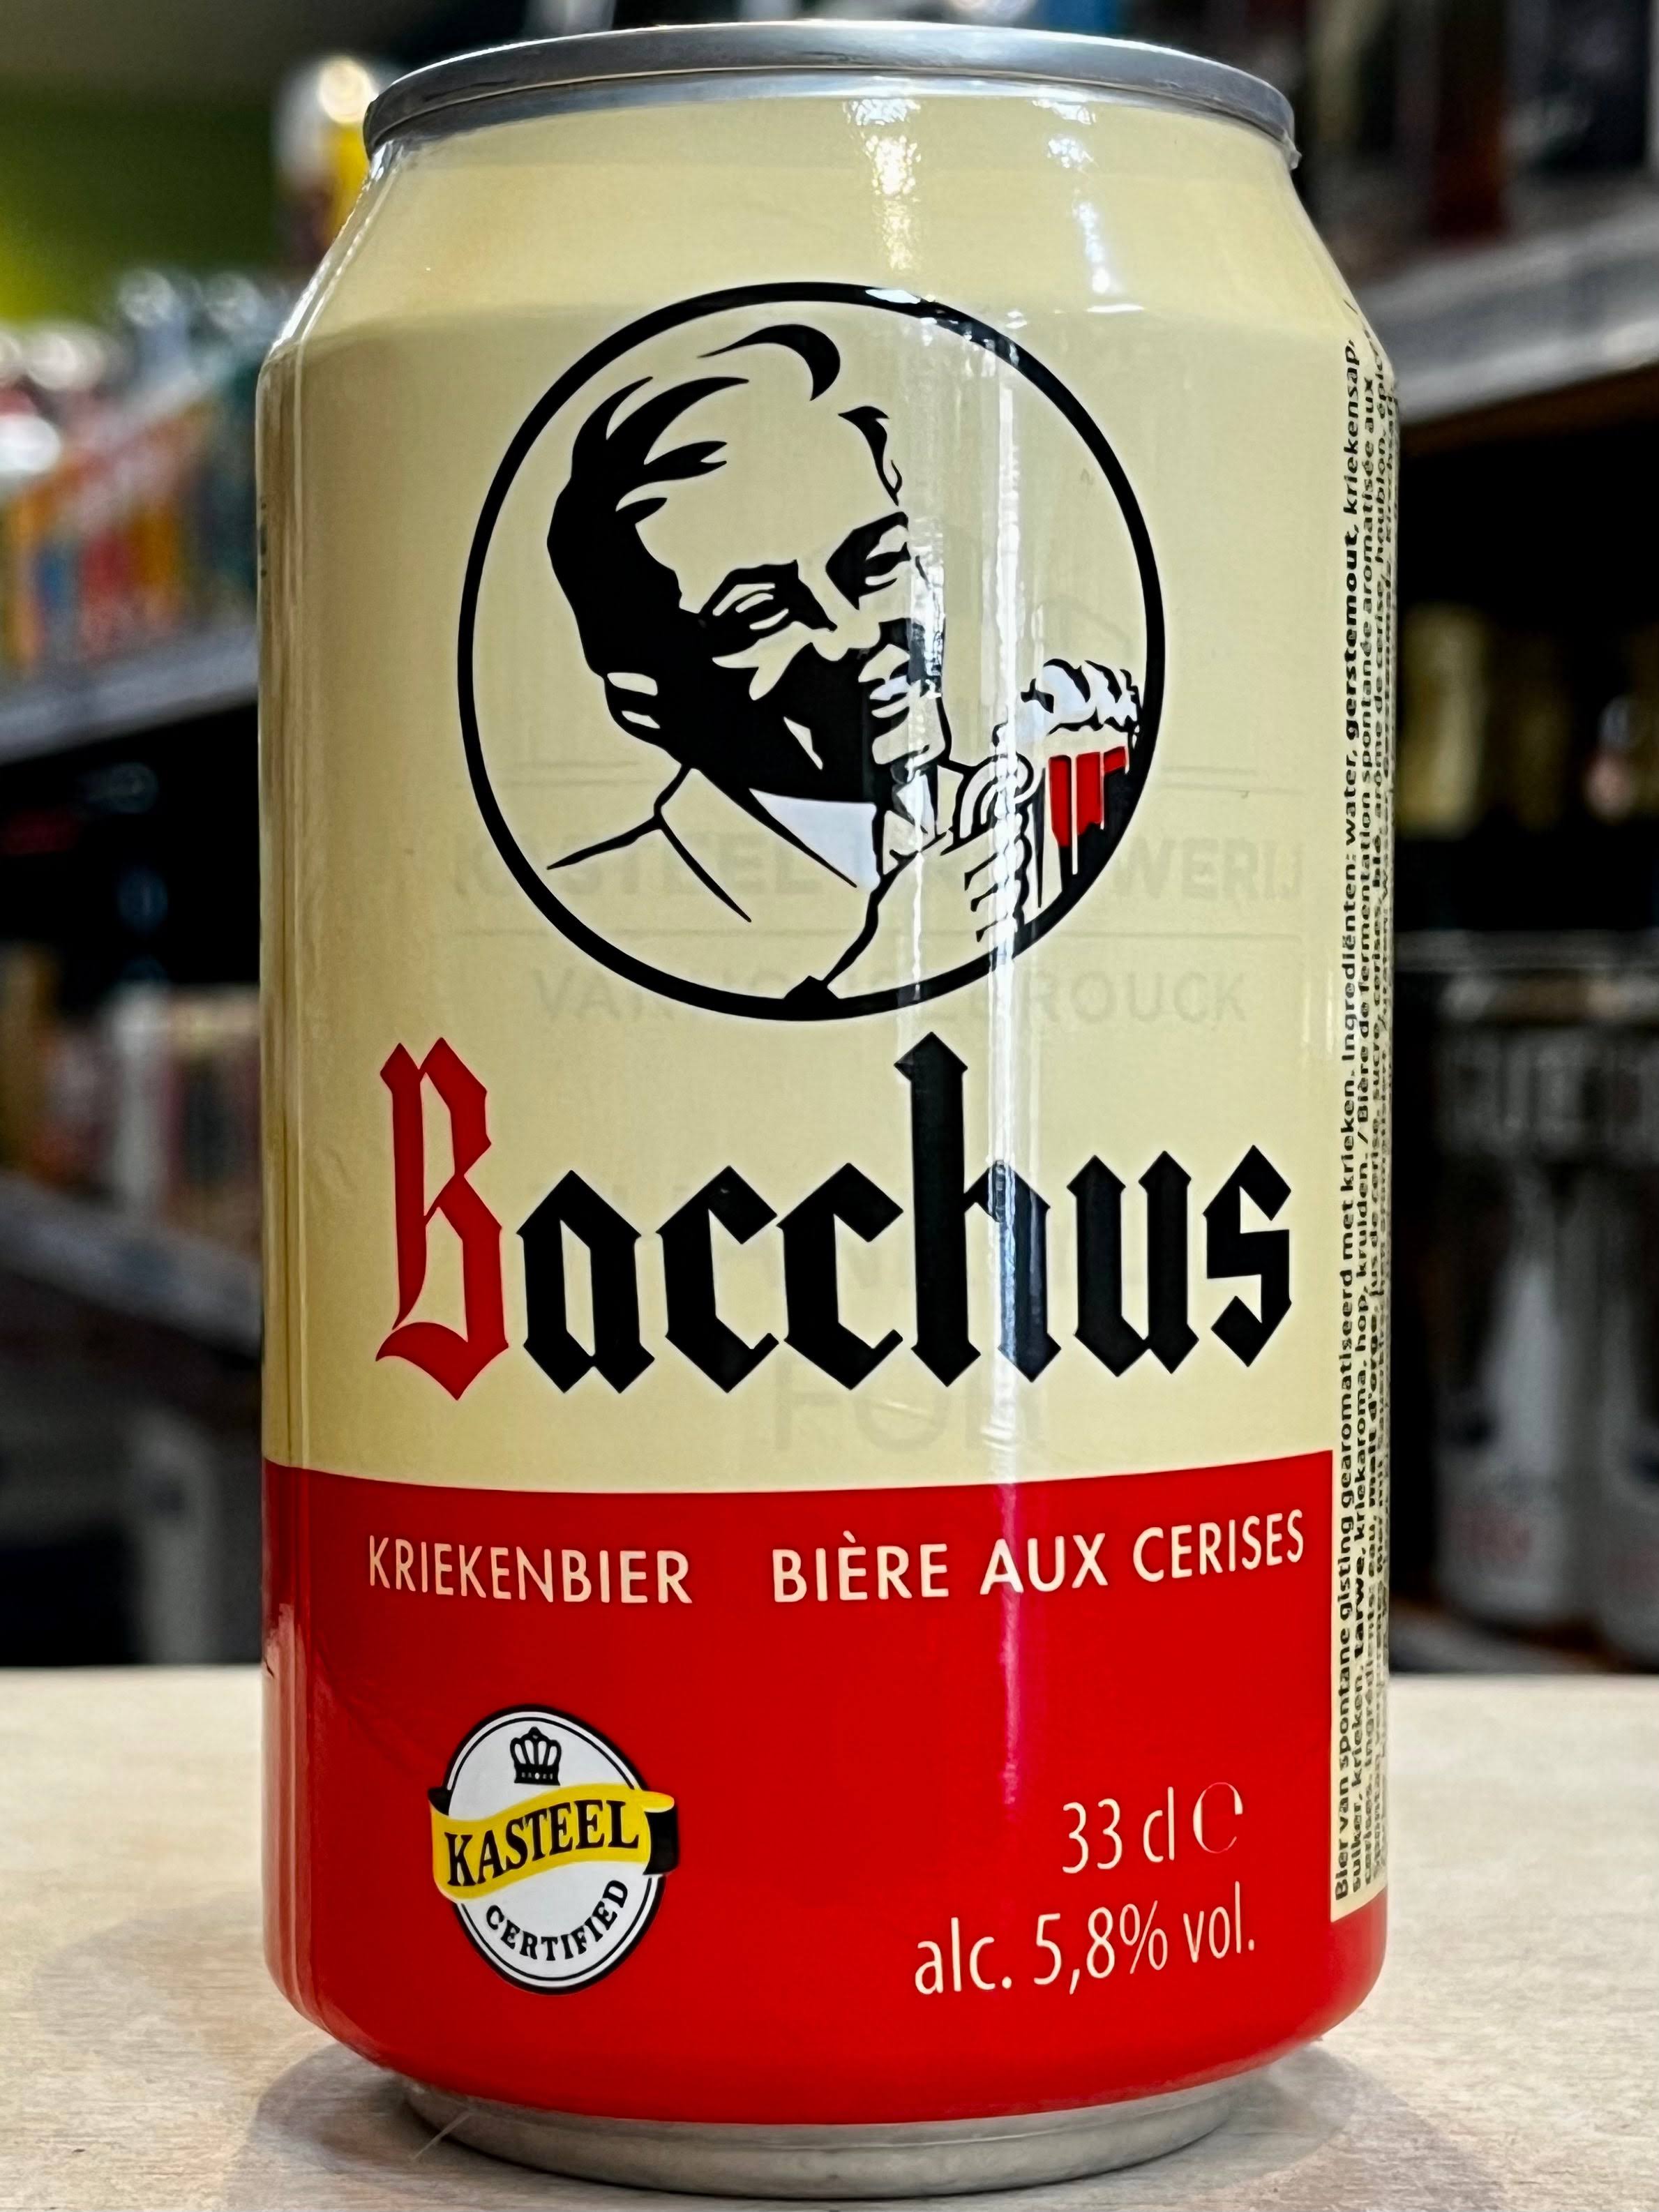 Bacchus - Kriekenbier cherry Beer